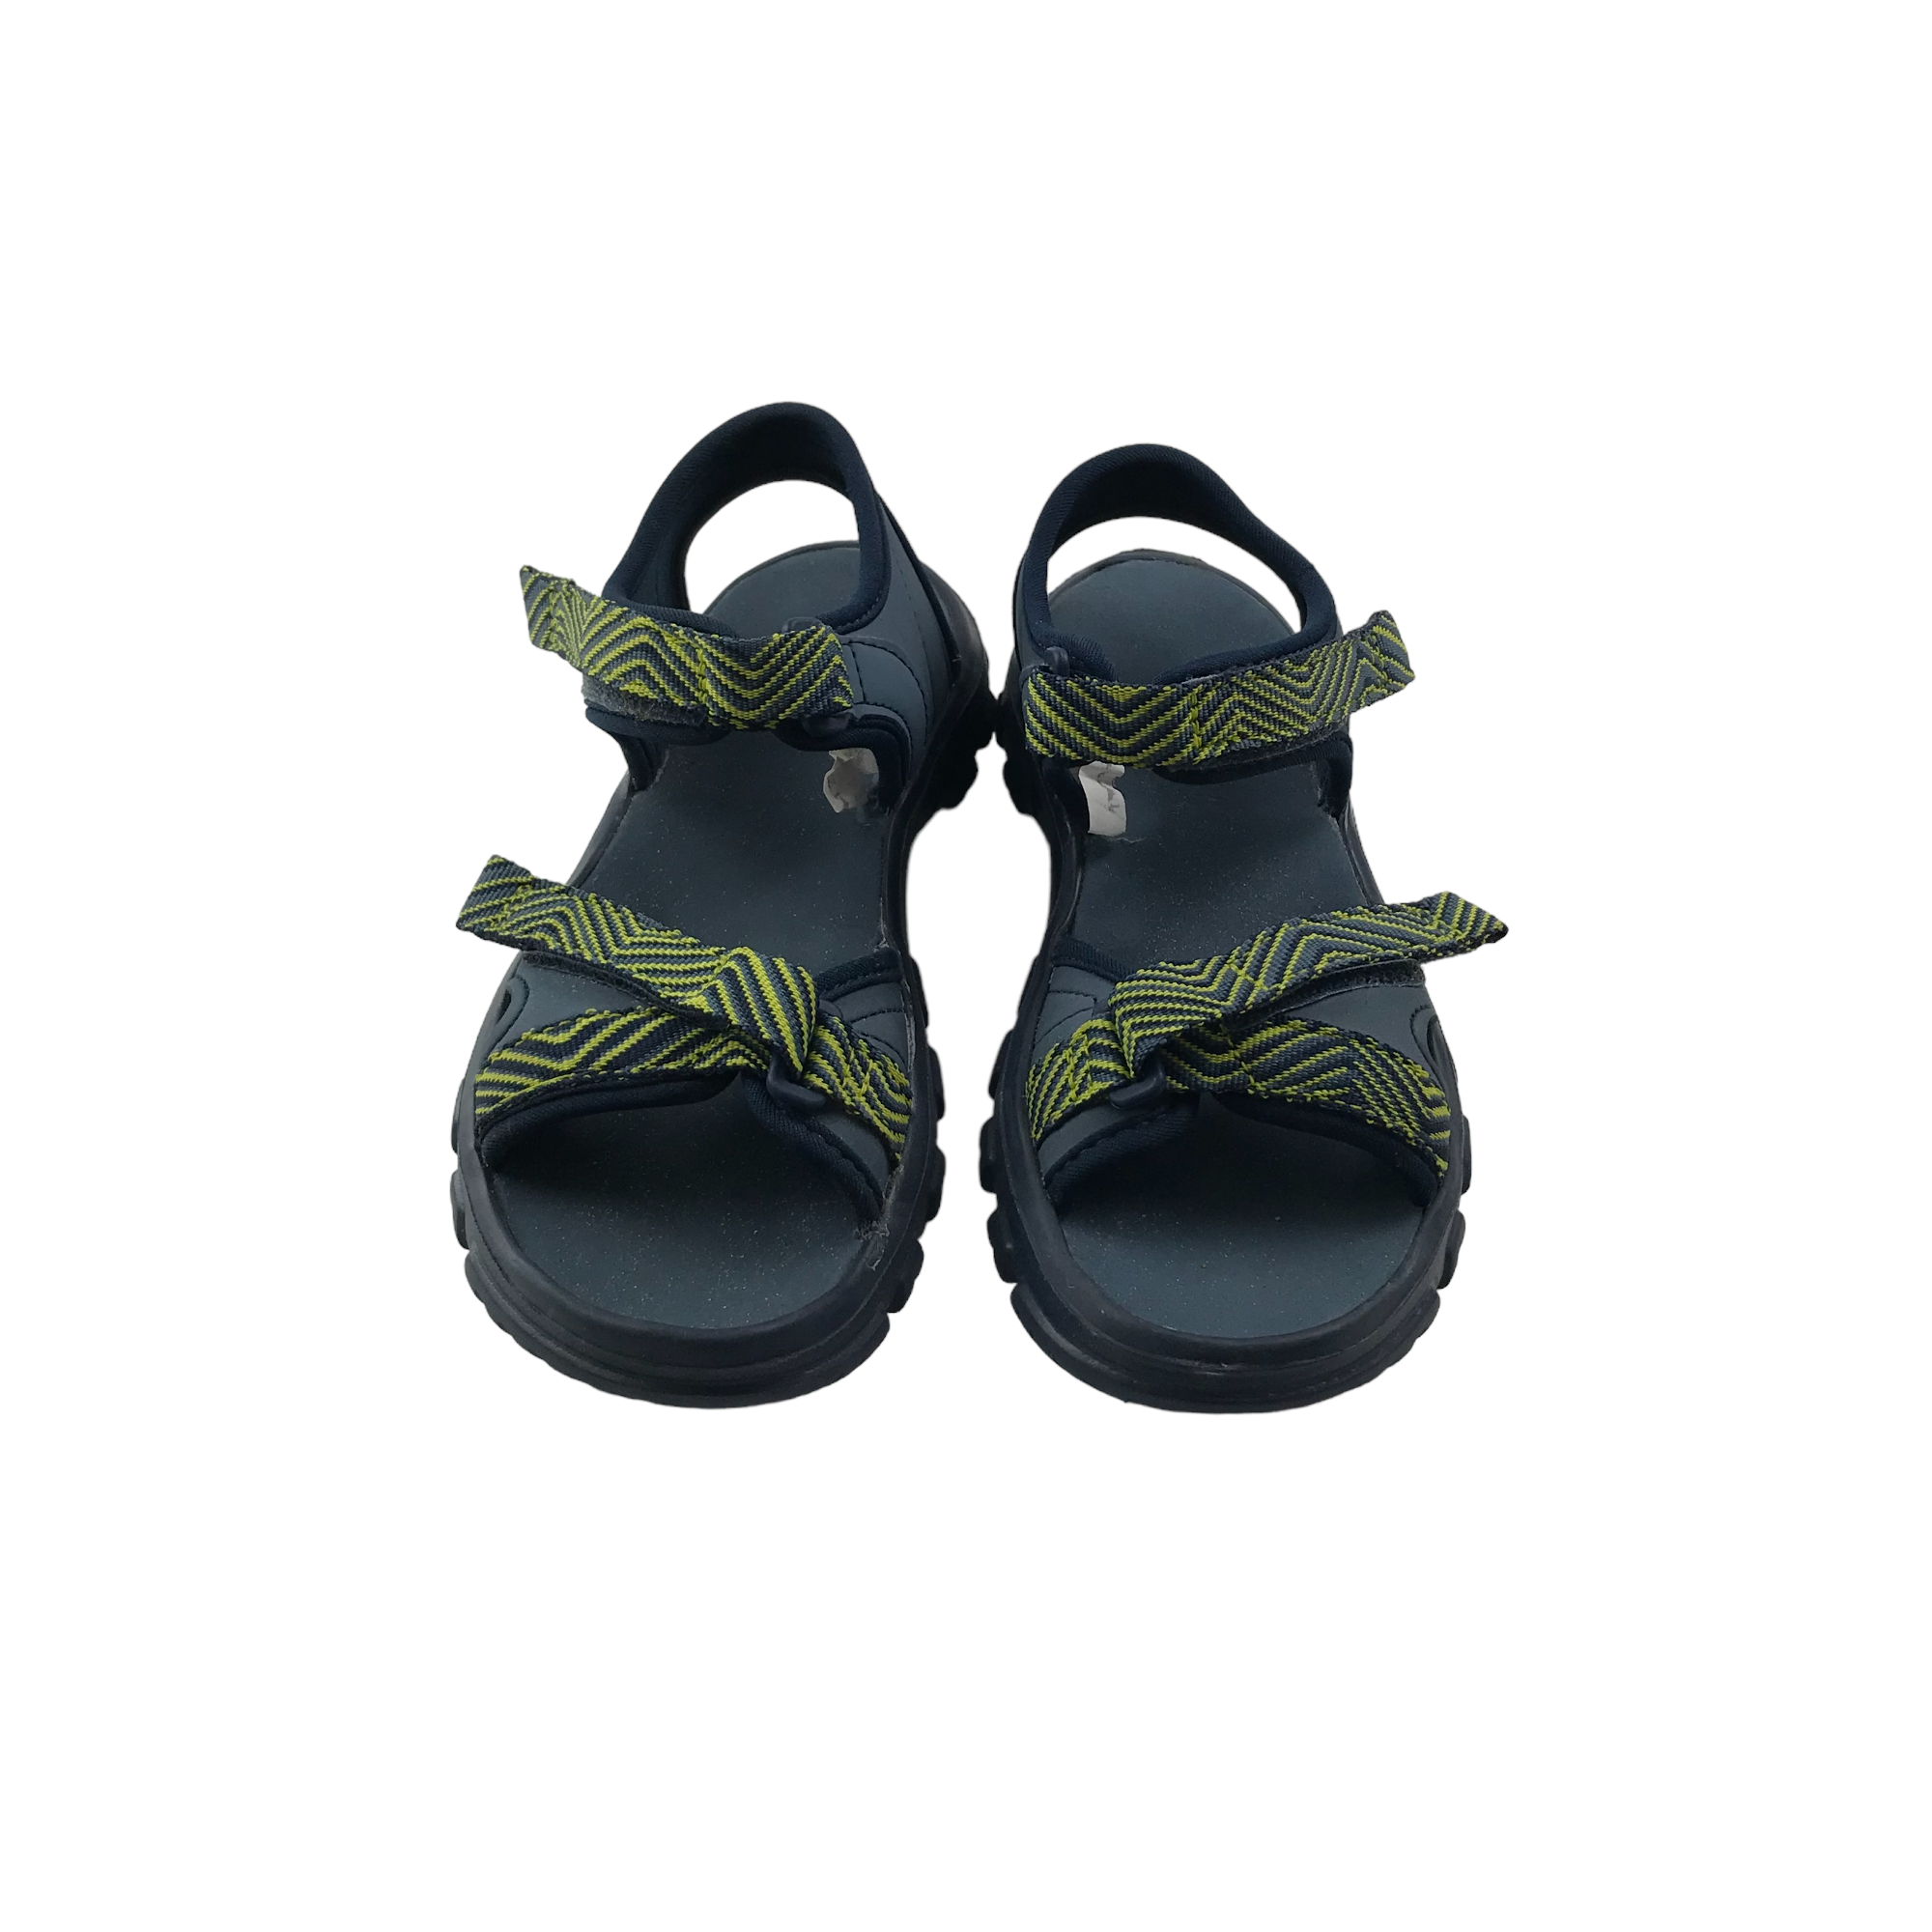 Shop Decathlon Sandals for Women | DealDoodle